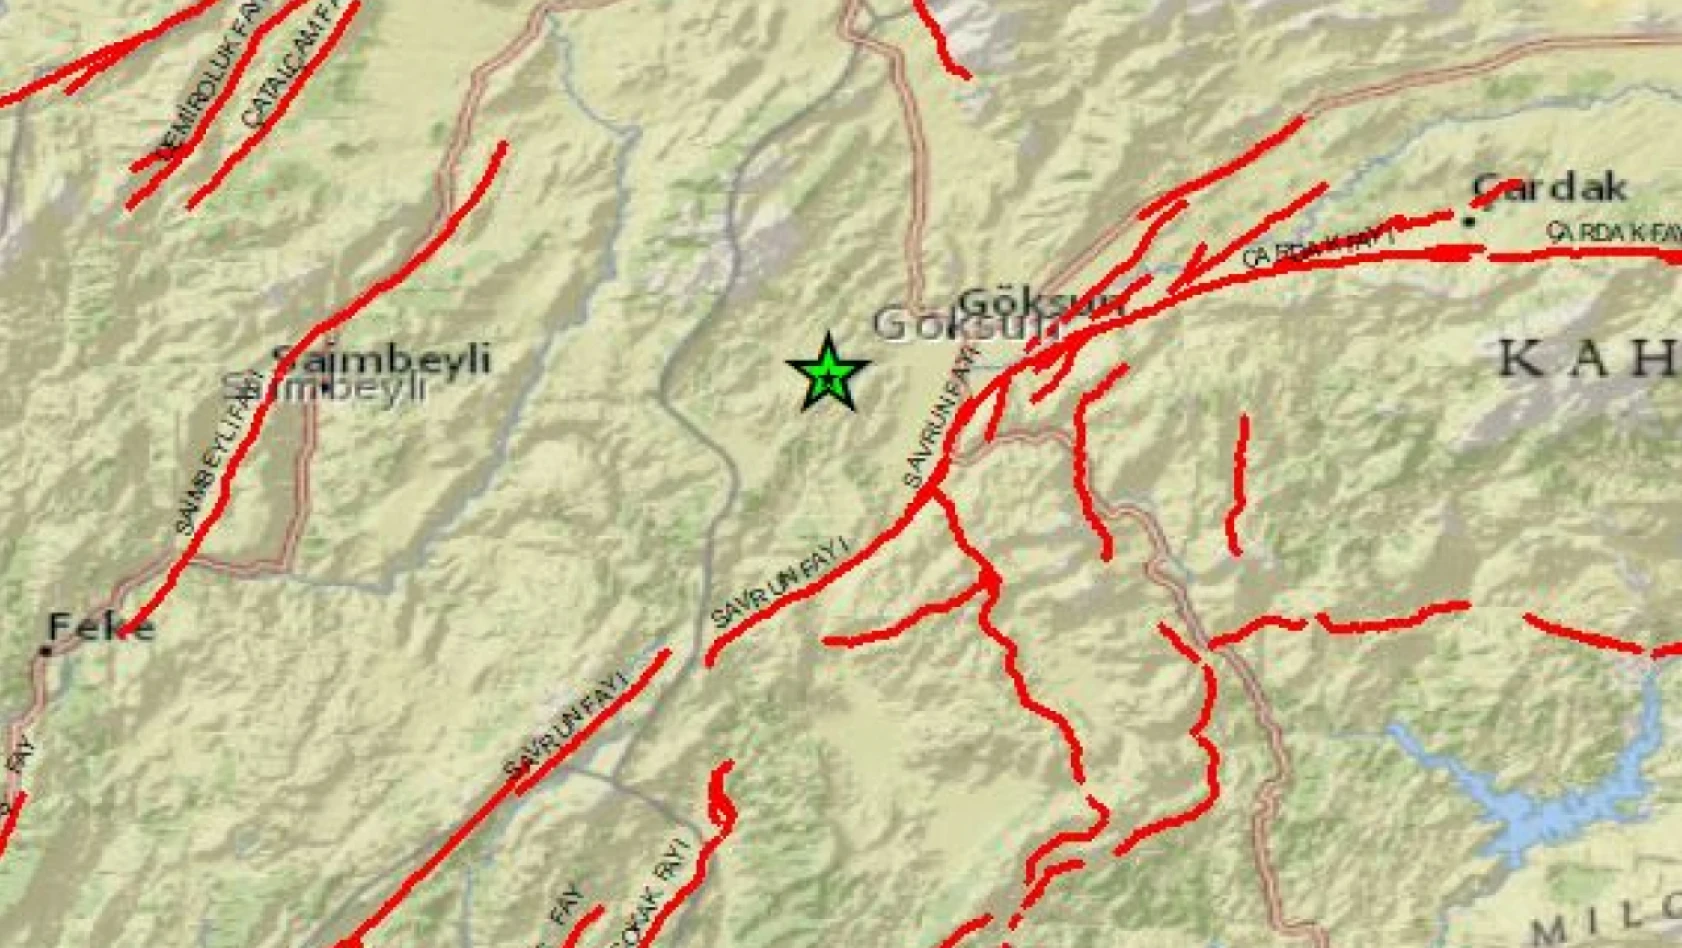 Deprem Kayseri'den de hissedildi - Göksun'da deprem oldu